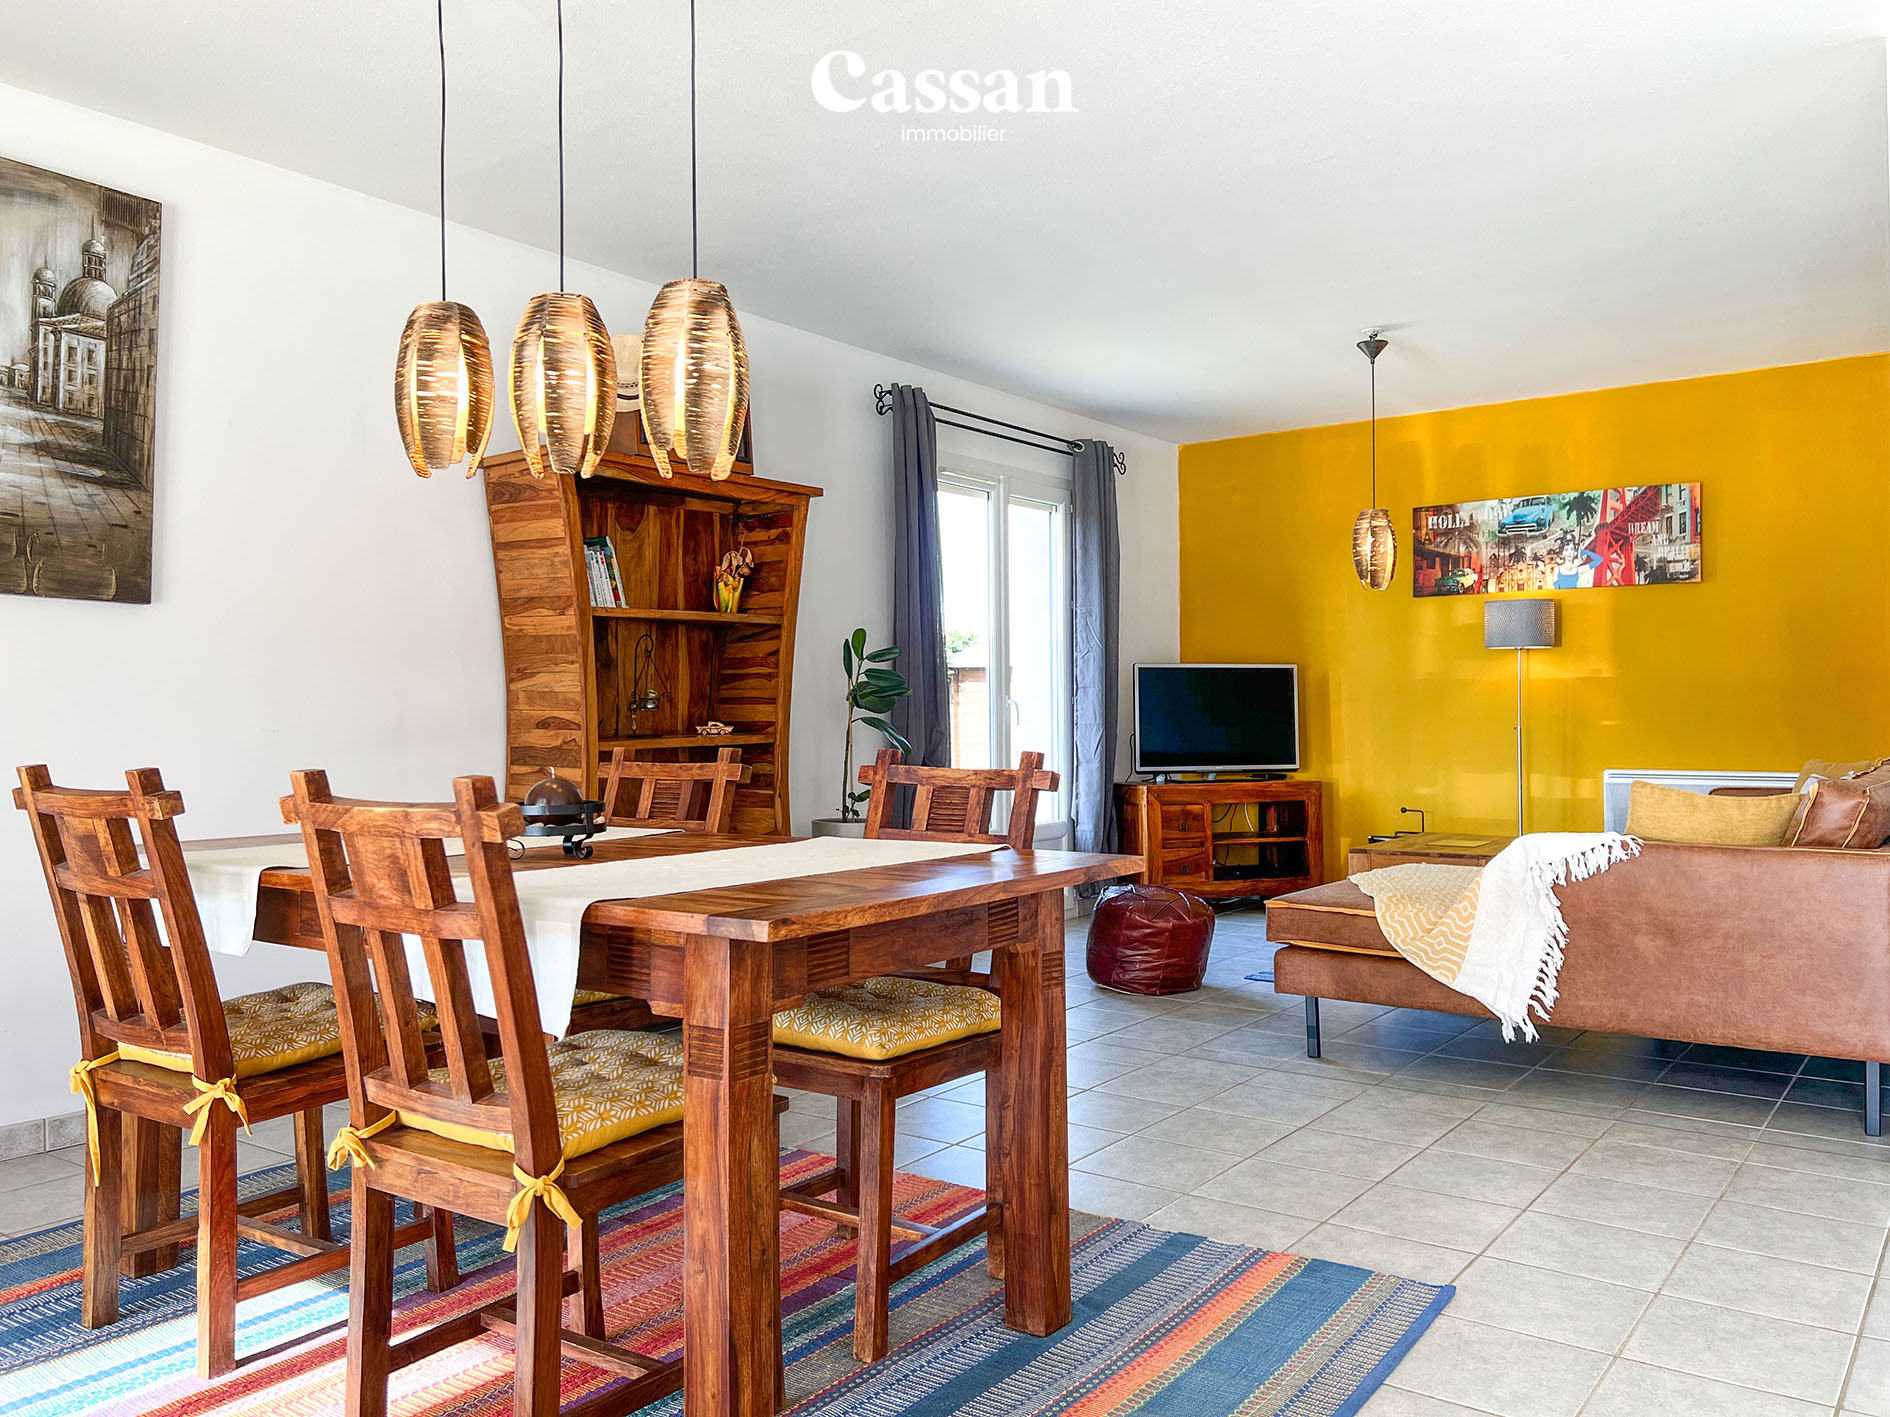 Séjour maison à vendre Crandelles Cassan immobilier